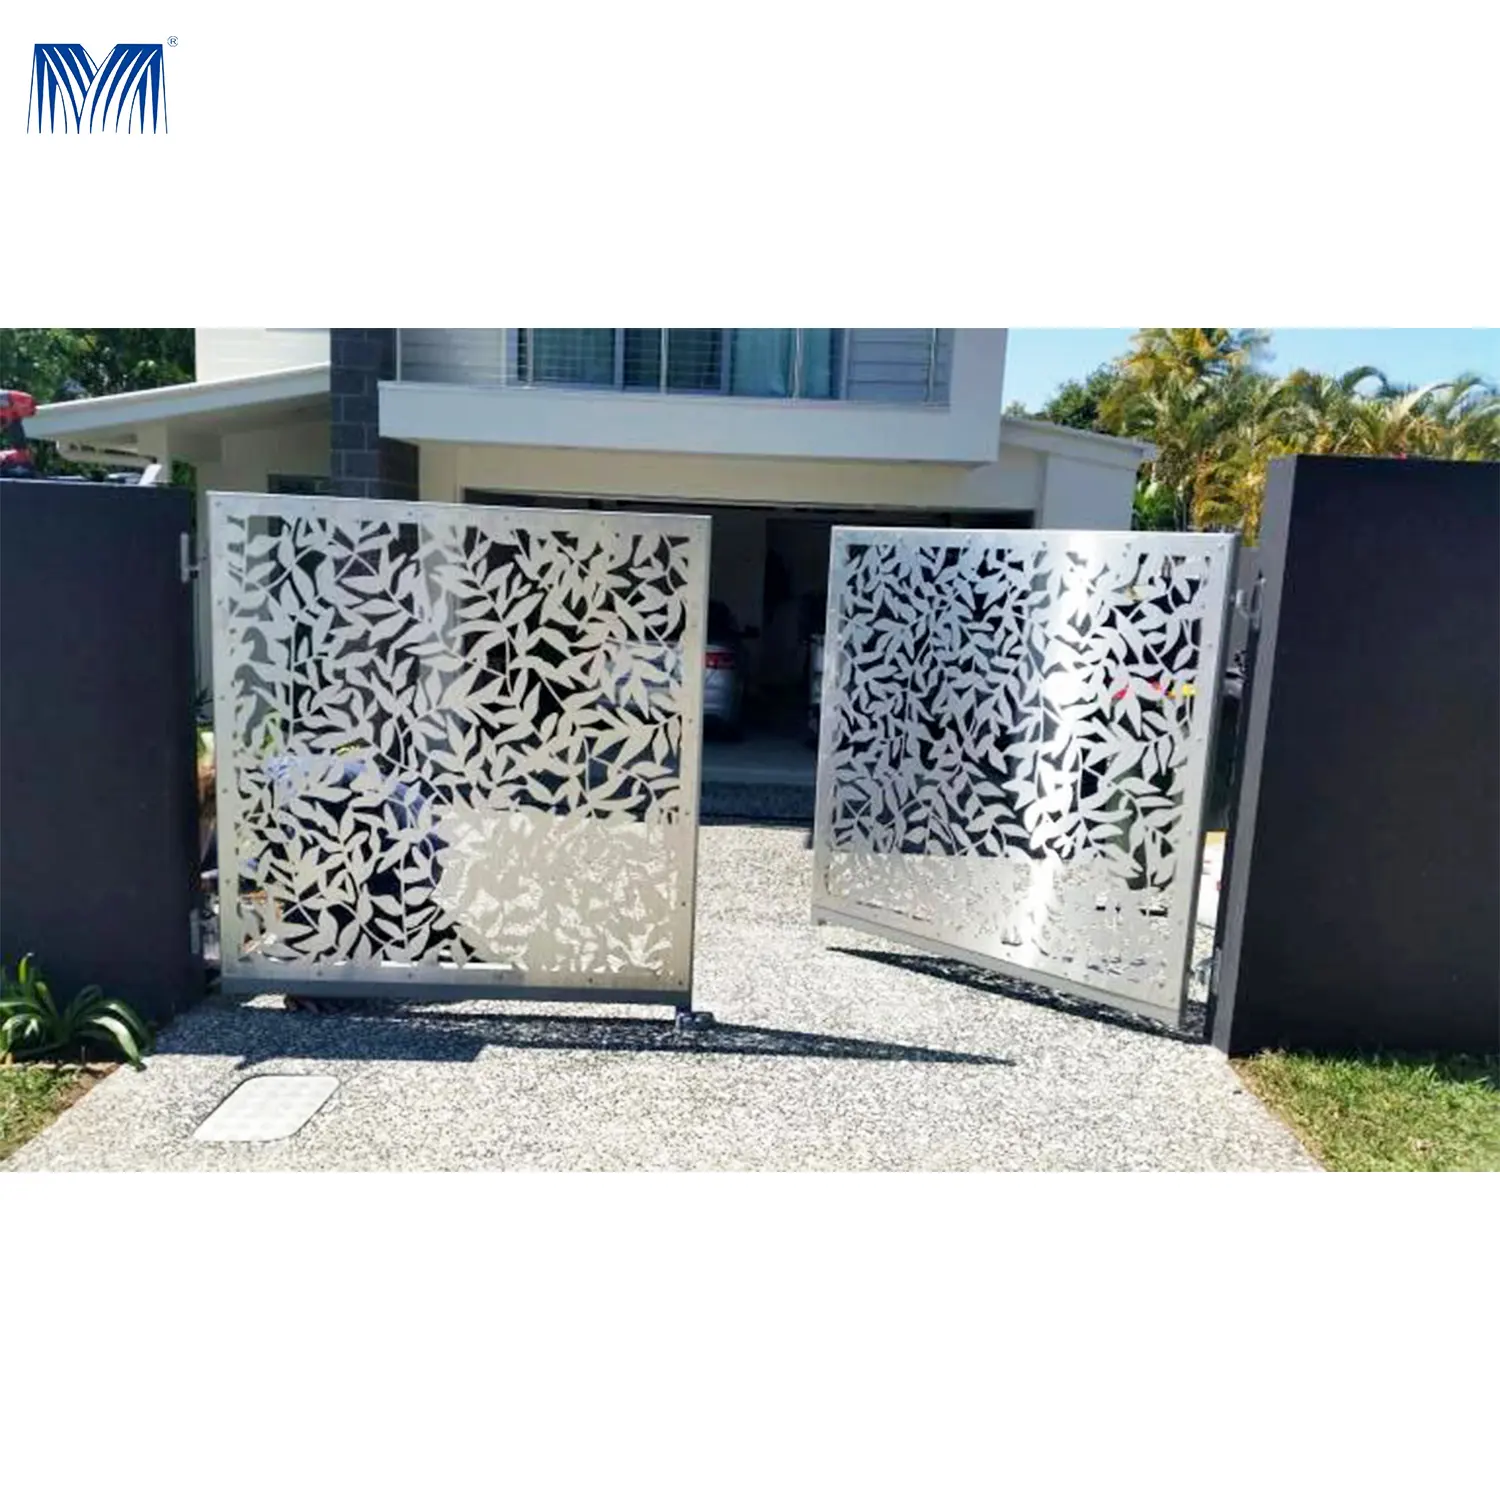 Commercio di accesso per hotel tagliafuoco design tubolare moderno diverso nelle filippine cancello moderno in alluminio per recinzione a battente